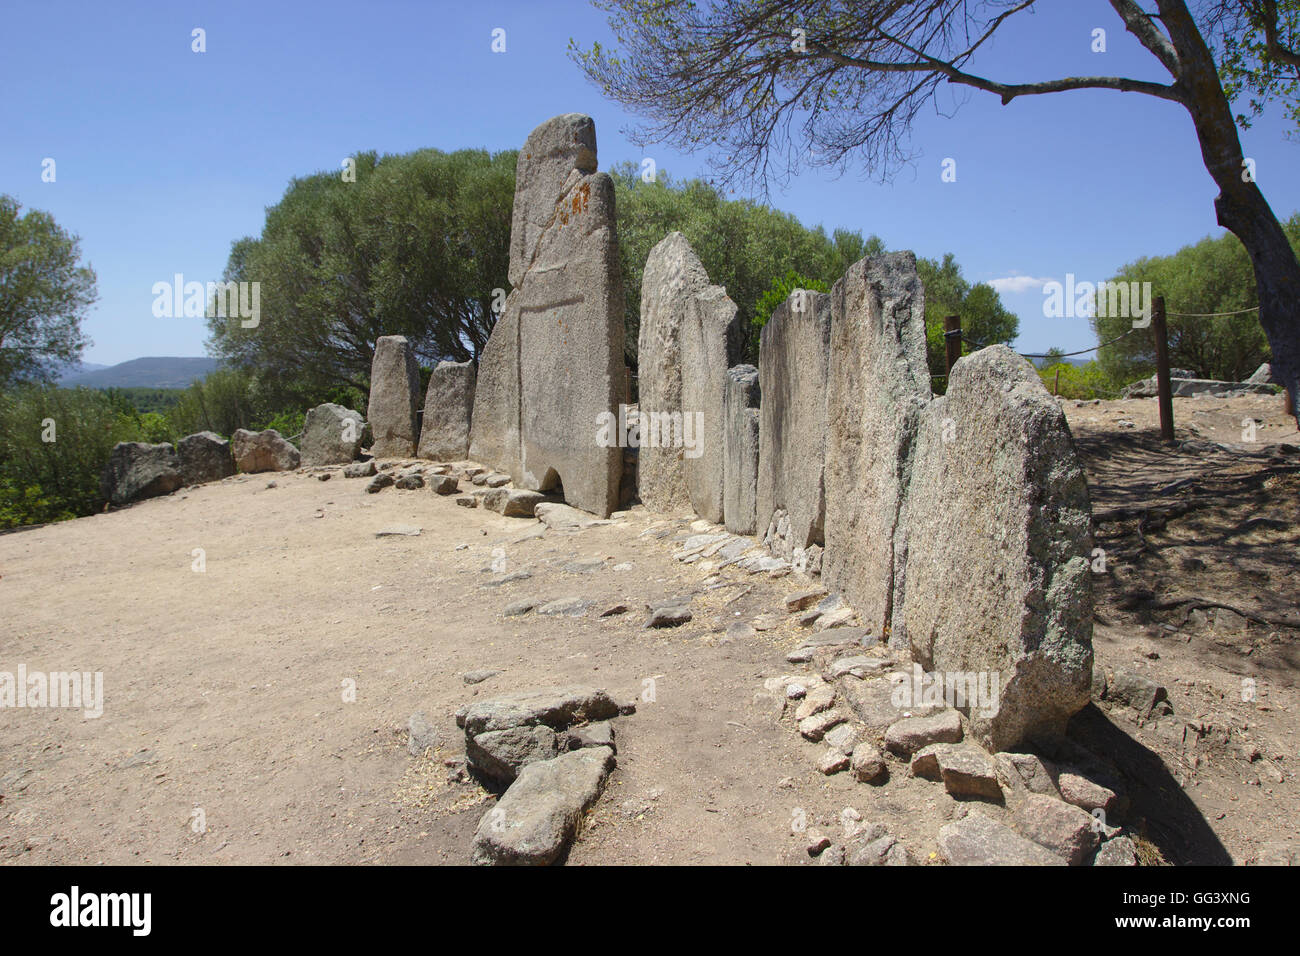 Giants grave Li Lolghi (Tomba dei Giganti Li Lolghi),  Bronze Age, near Arzachena, Sardinia, Italy Stock Photo